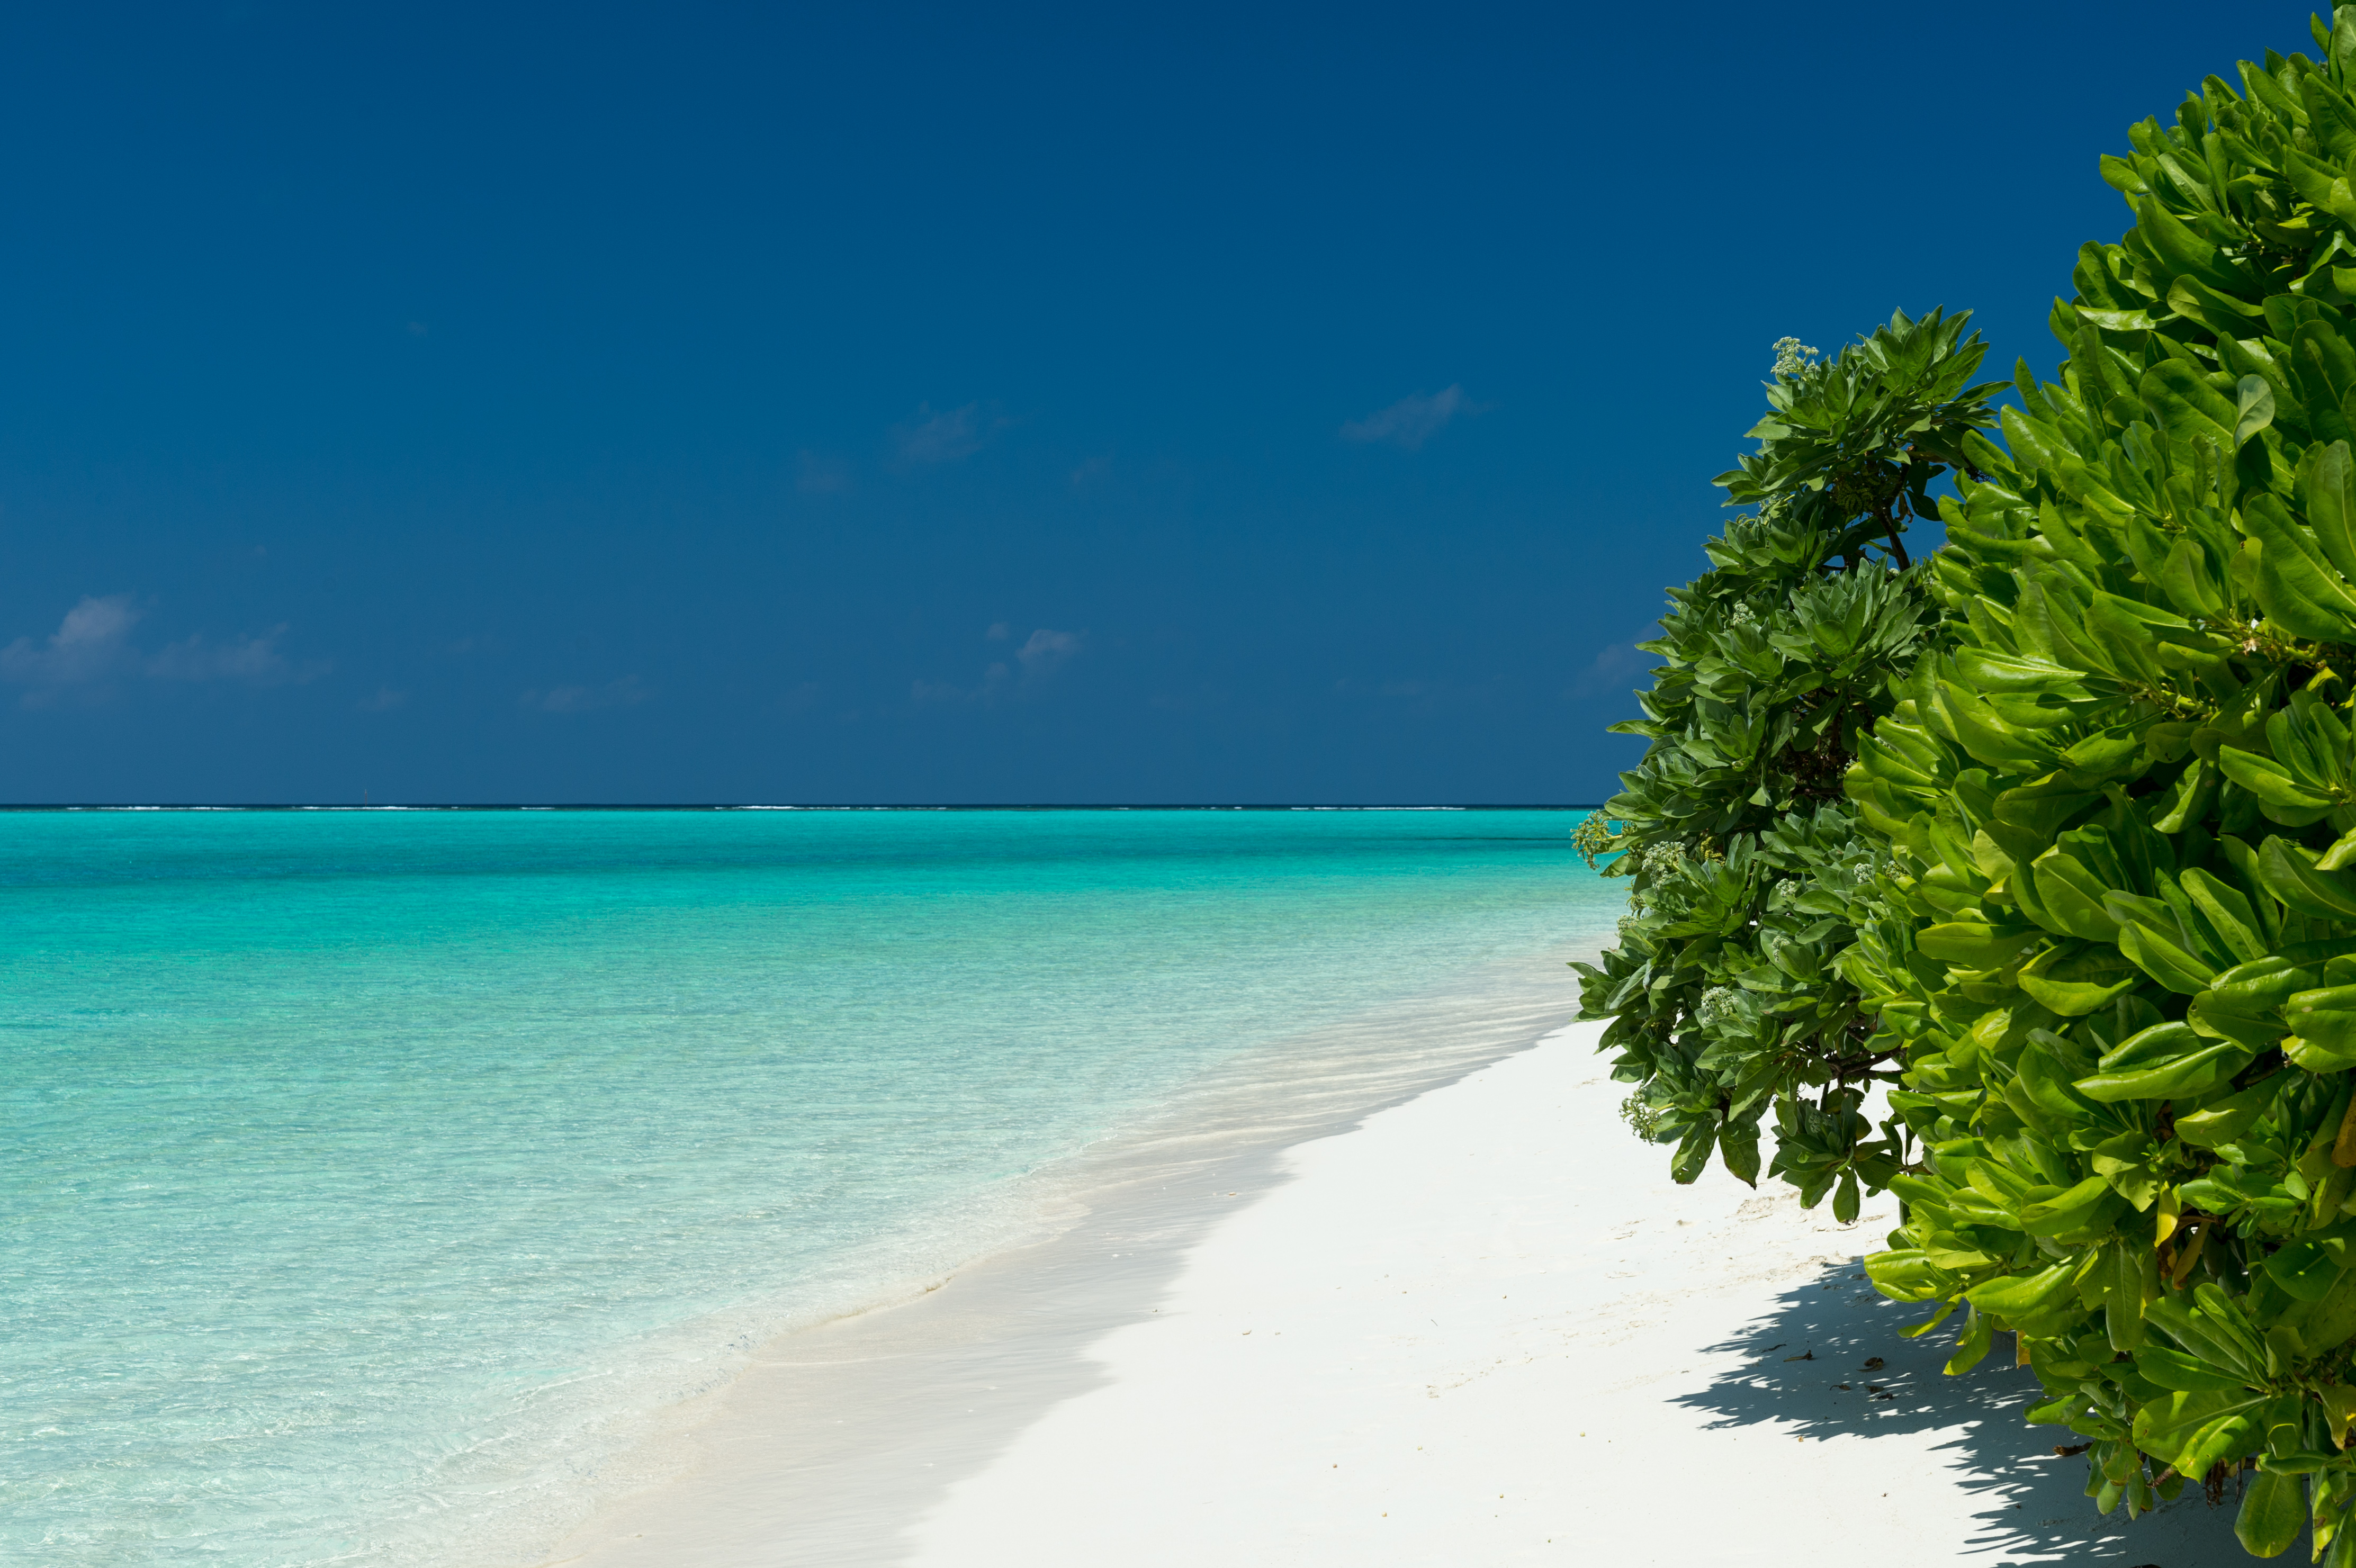 Скачать картинку Море, Горизонт, Дерево, Океан, Тропический, Мальдивы, Бирюзовый, Земля/природа в телефон бесплатно.